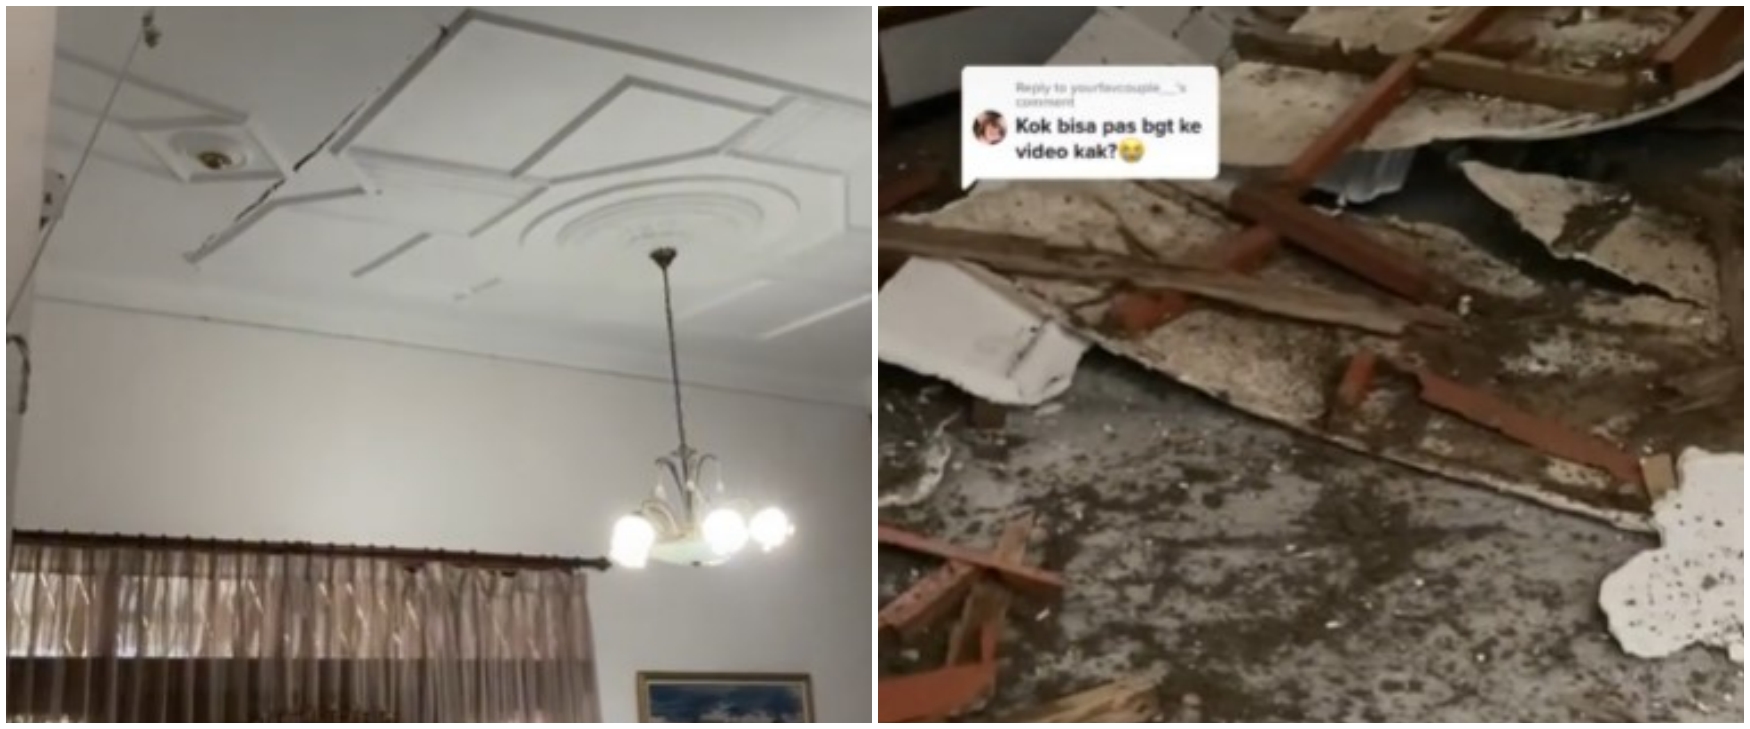 Detik-detik plafon rumah ambruk akibat rayap, bikin bergidik ngeri